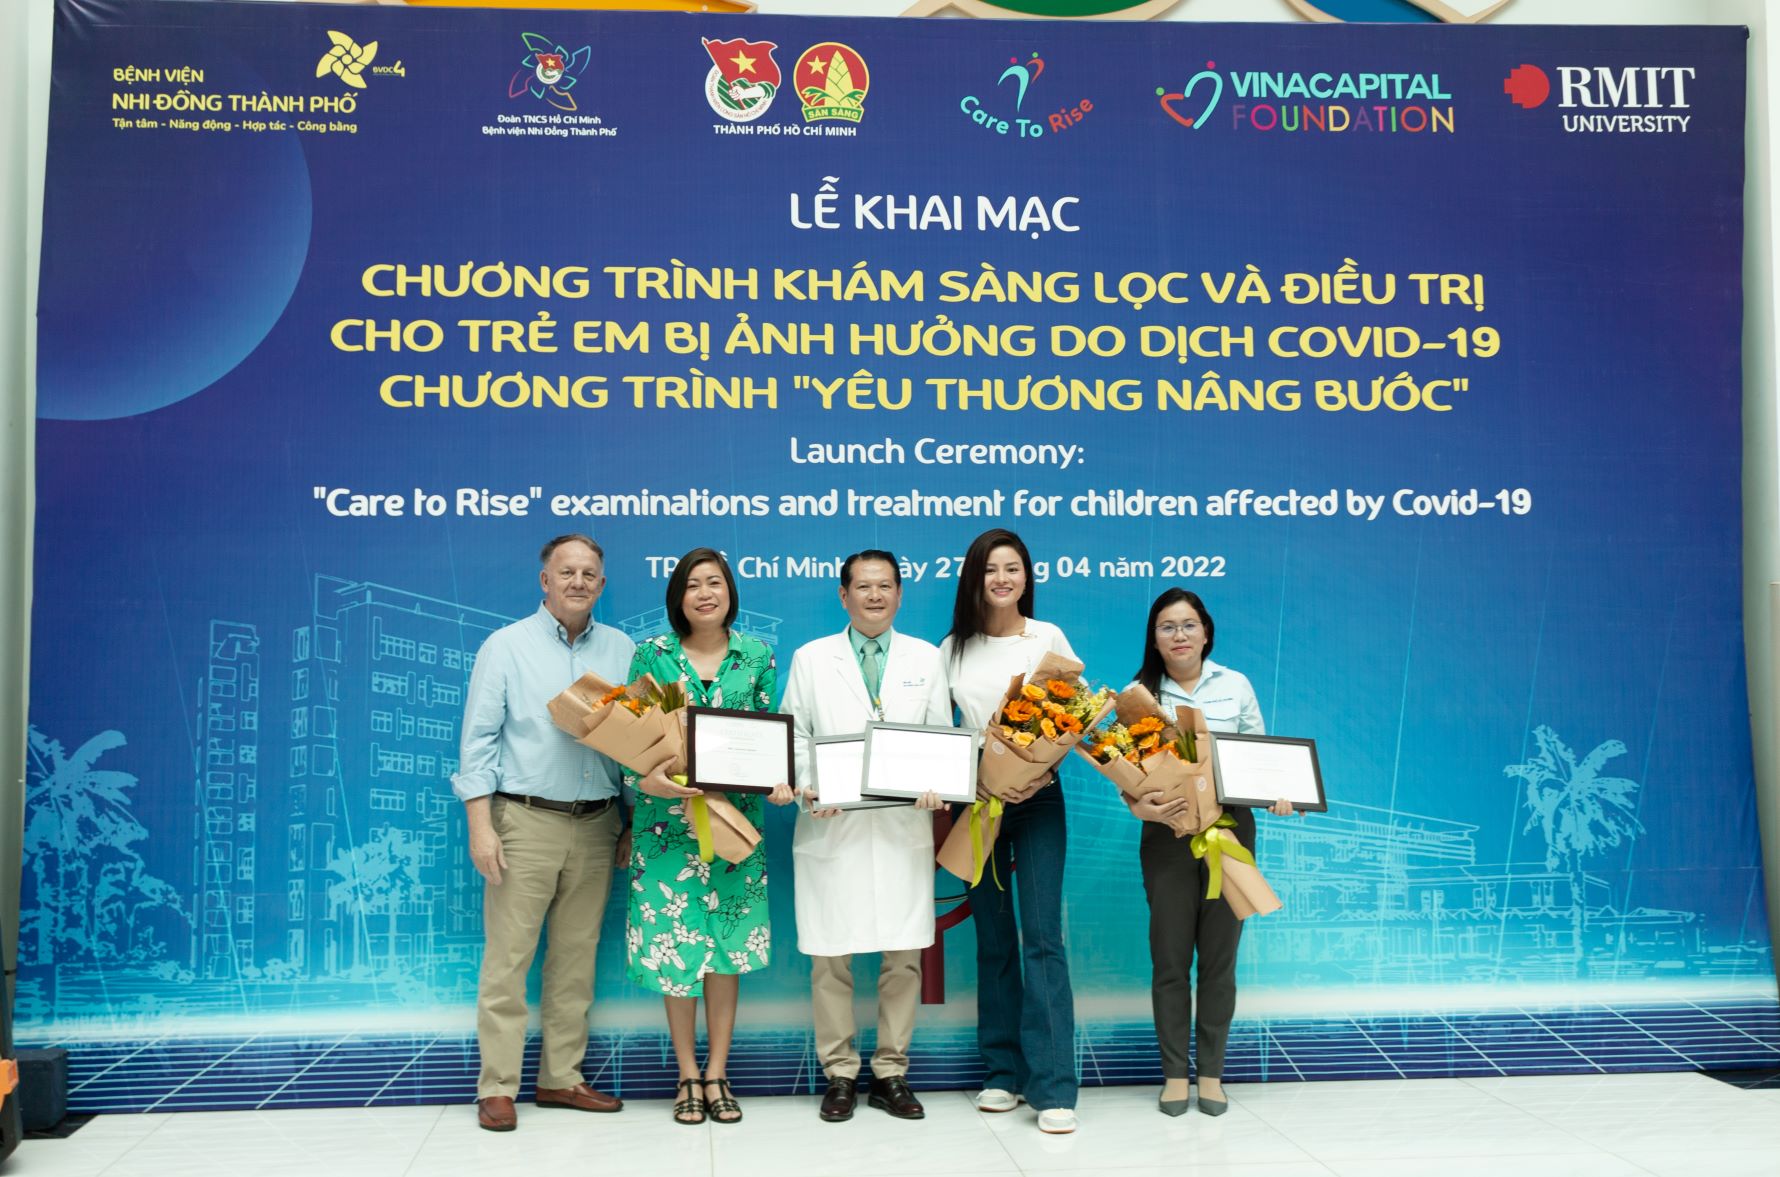 Đại diện VCF trao hoa và thư cảm ơn cho Đại diện Thành Đoàn, Bệnh viện Nhi đồng Thành phố, Đại học RMIT Việt Nam và Siêu mẫu Vũ Thu Phương